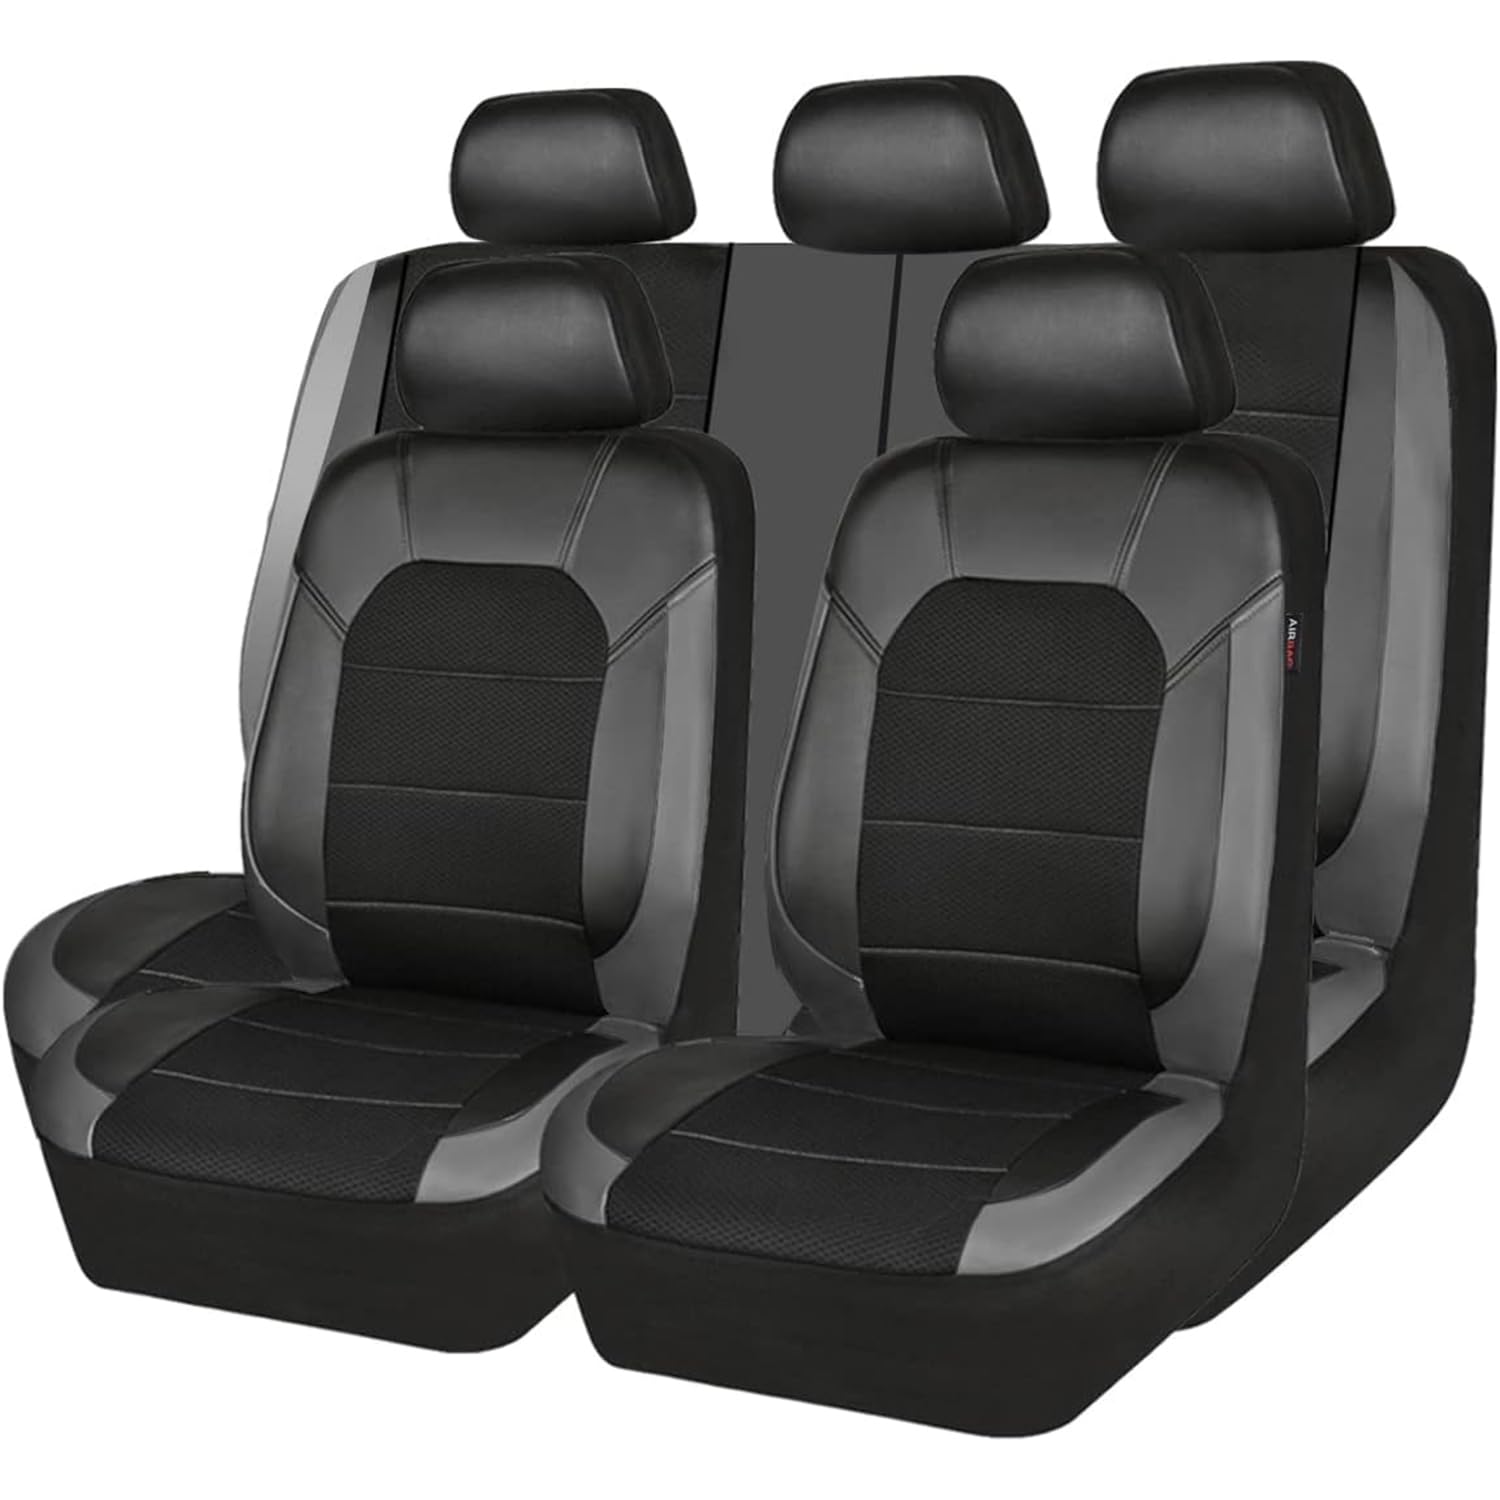 EXBERT Auto-Sitzbezug für Audi Q5 SUV FY 8R 80A 2008-2013 2014 2015 2016 2017 2018 2019 2020 2021 2022 2023 2024, 9-teiliges Set Sitzbezug Komplett-Set, PKW-Sitzbezüge, Sitzschoner 5 Sitzplätze,B von EXBERT